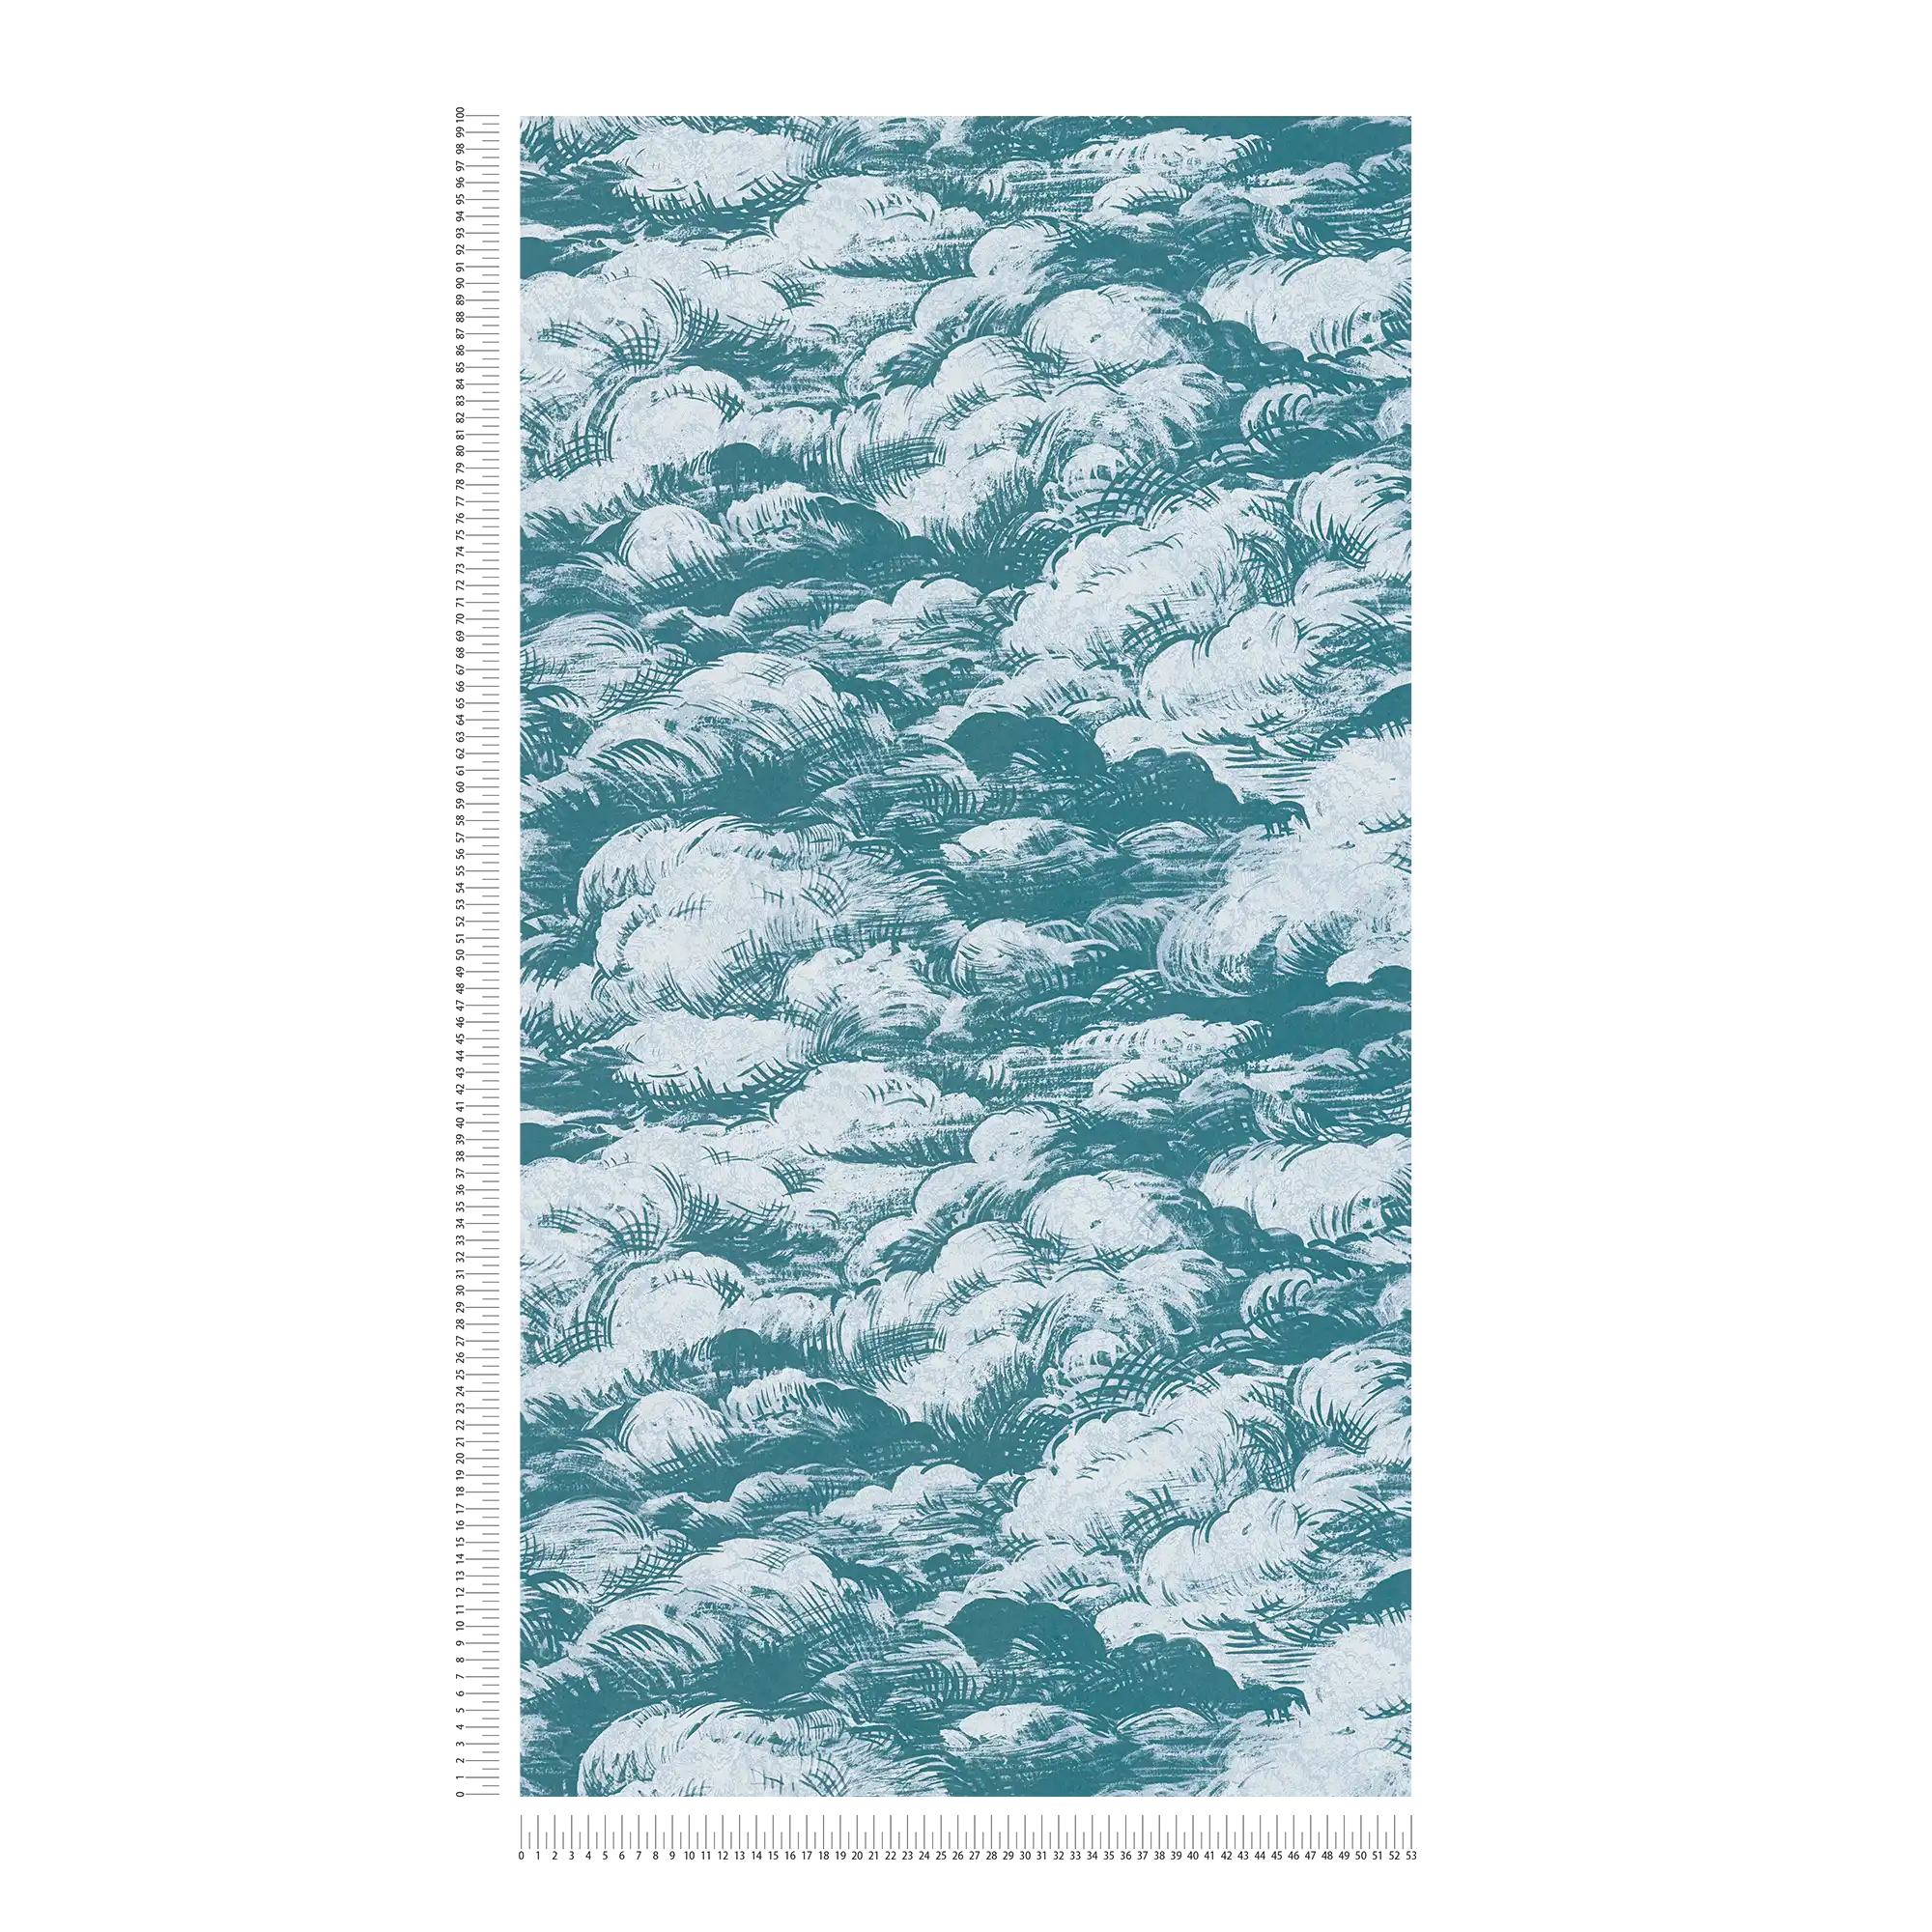             Tapete Blaugrün Wolken Landschaft im Vintage Stil – Blau, Weiß
        